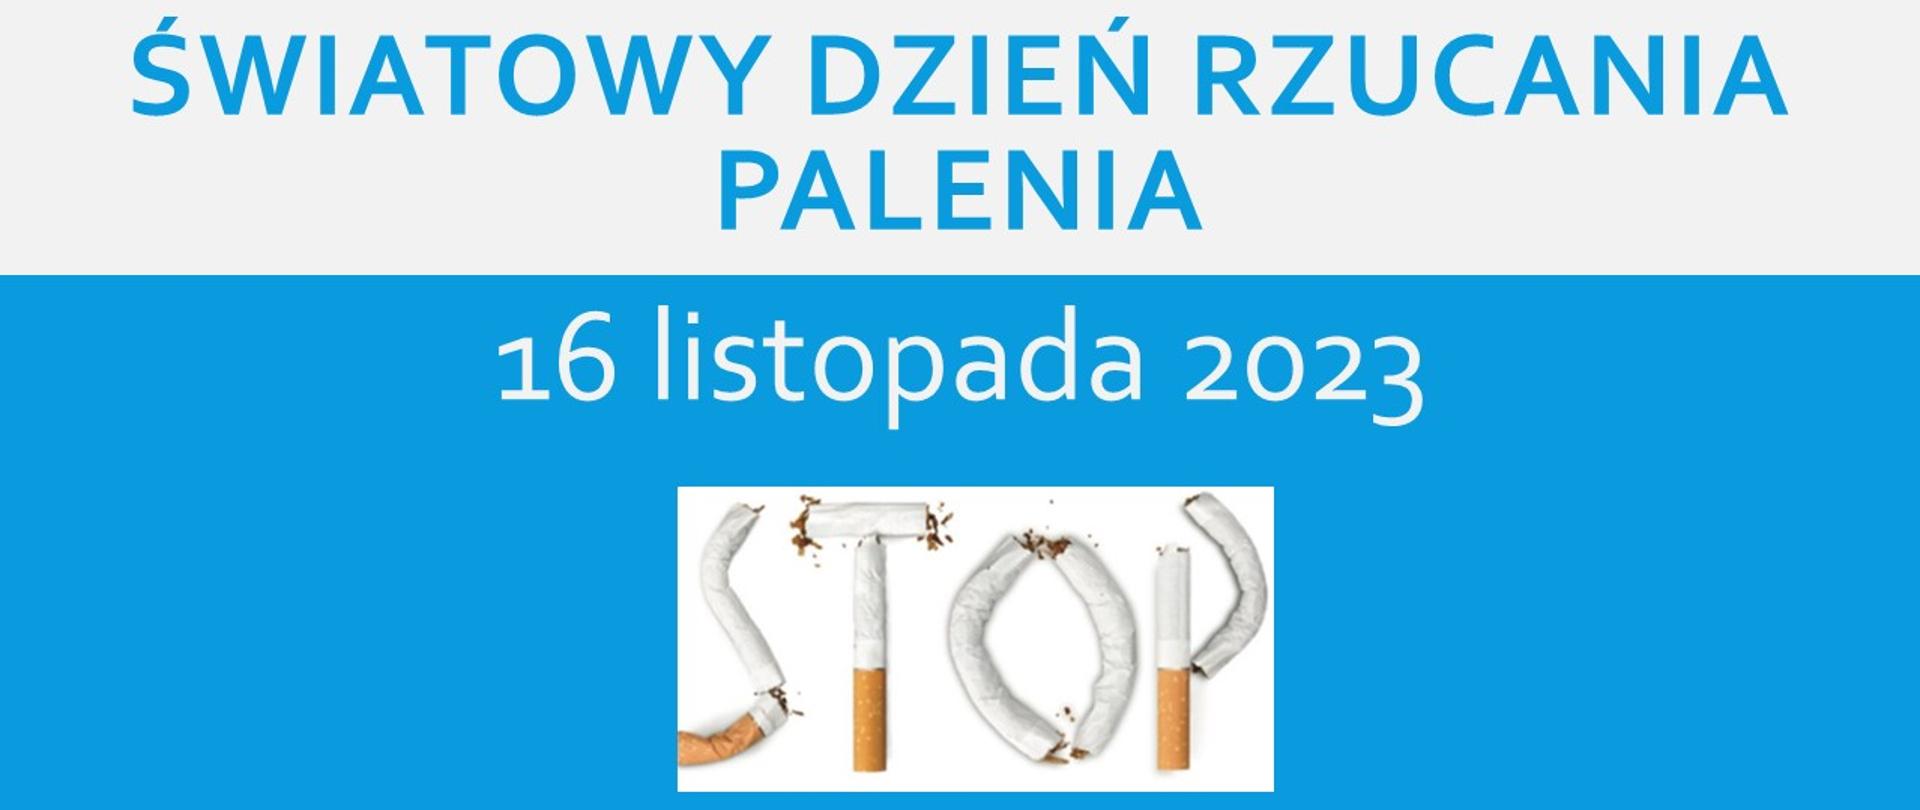 Na obrazku widnieje napis Światowy Dzień Rzucania Palenia 16 listopada 2023 oraz ułożony napis stop z papierosów oraz logo Pańśtwowej Inspekcji Sanitarnej wraz z nazwa Powiatowa Stacja Sanitarno-Epidemiologiczna w Pile